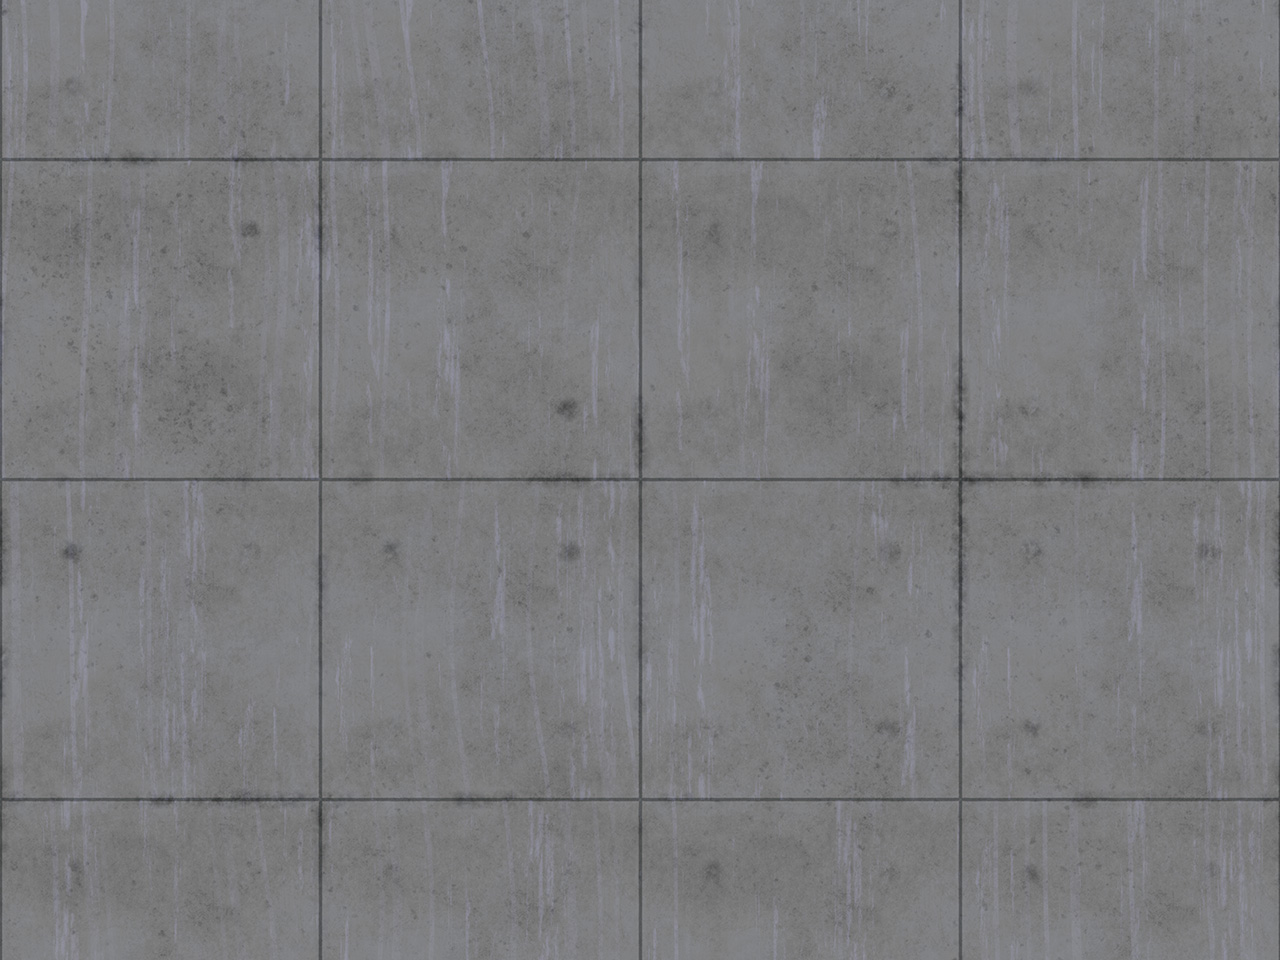 Текстура плитки бетона асфальта бетона